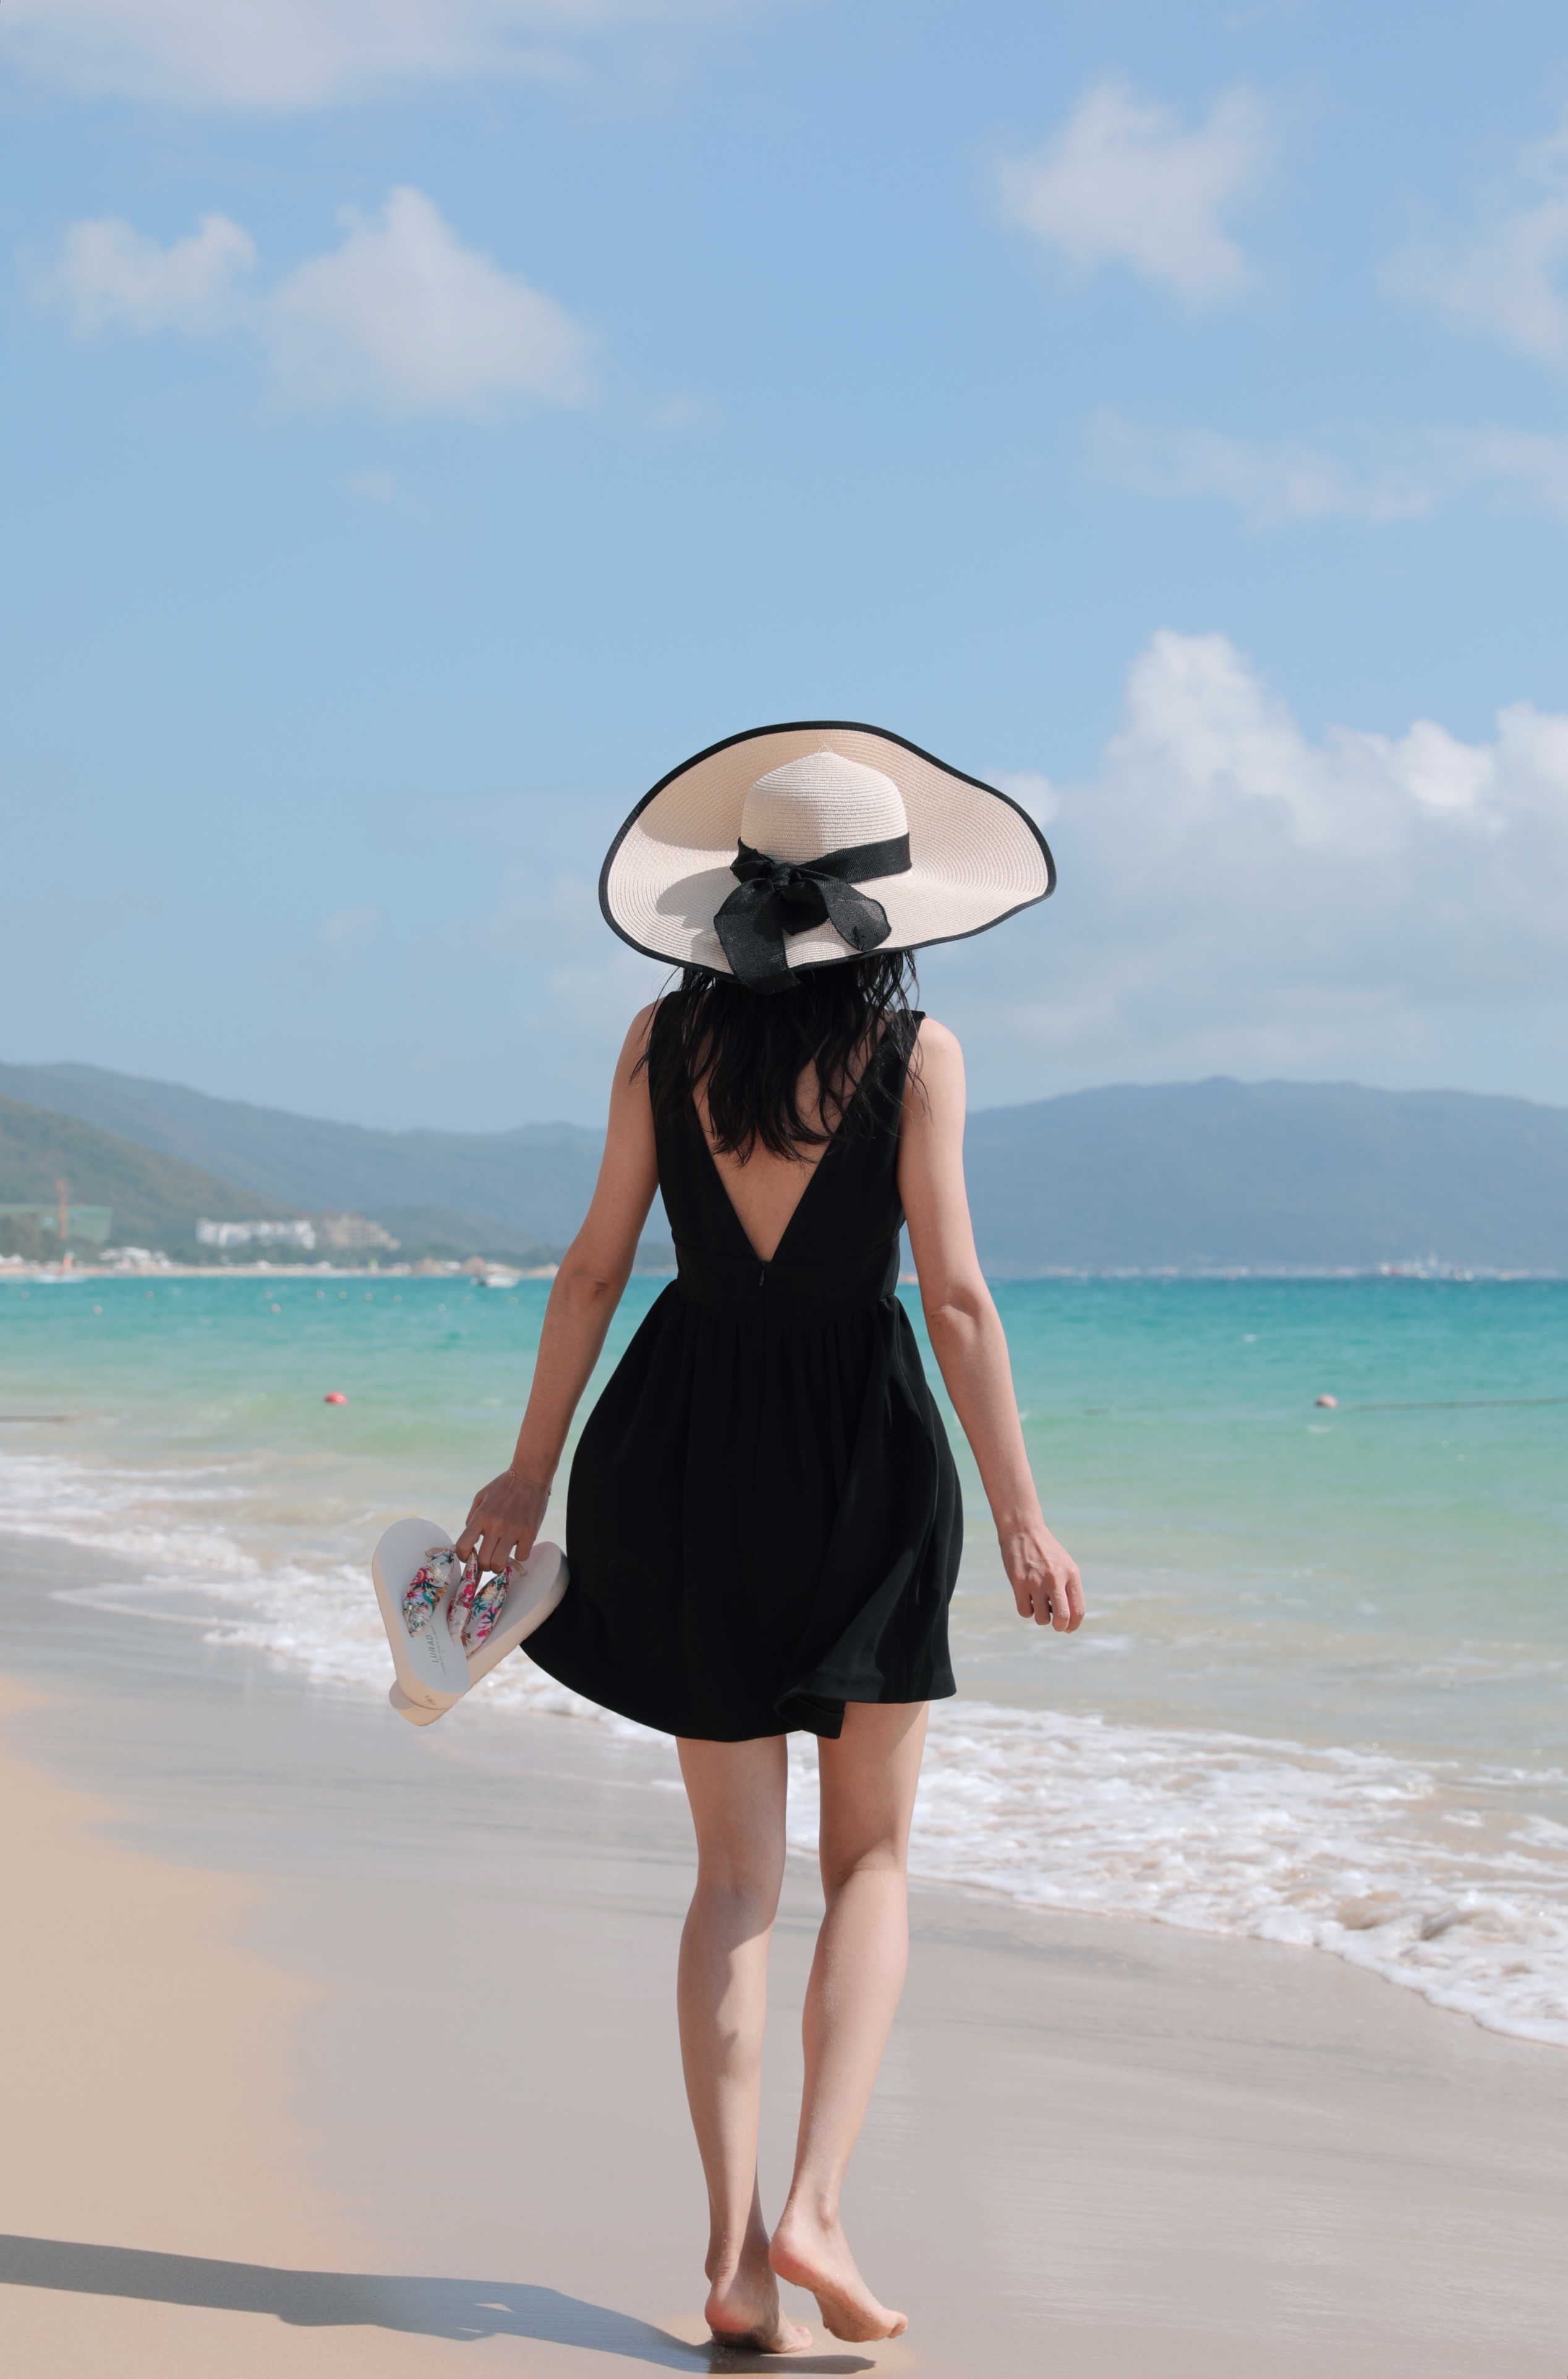 三亚旅游拍照衣服女海边度假沙滩裙超仙白色露背吊带连衣裙仙女裙 - 三坑日记